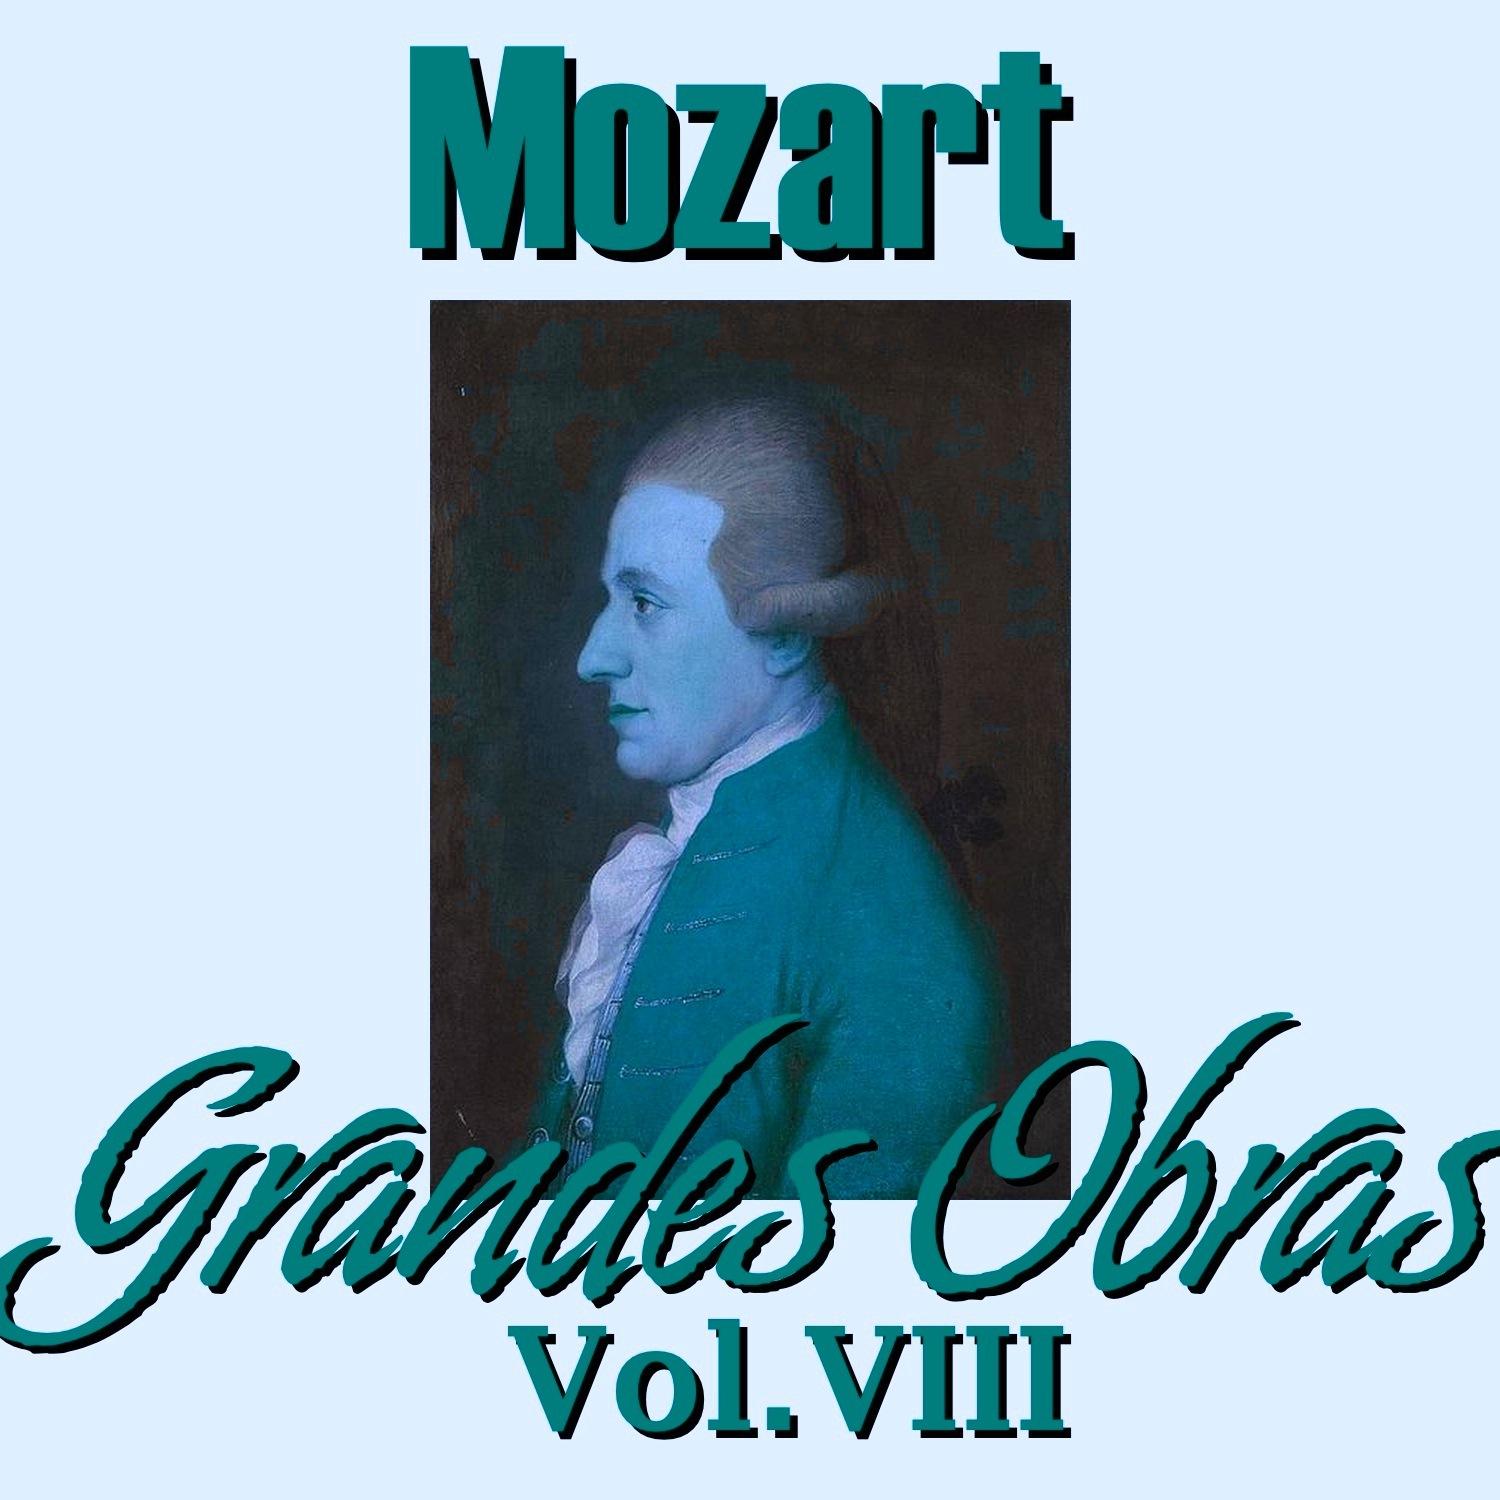 Mozart Grandes Obras Vol.VIII